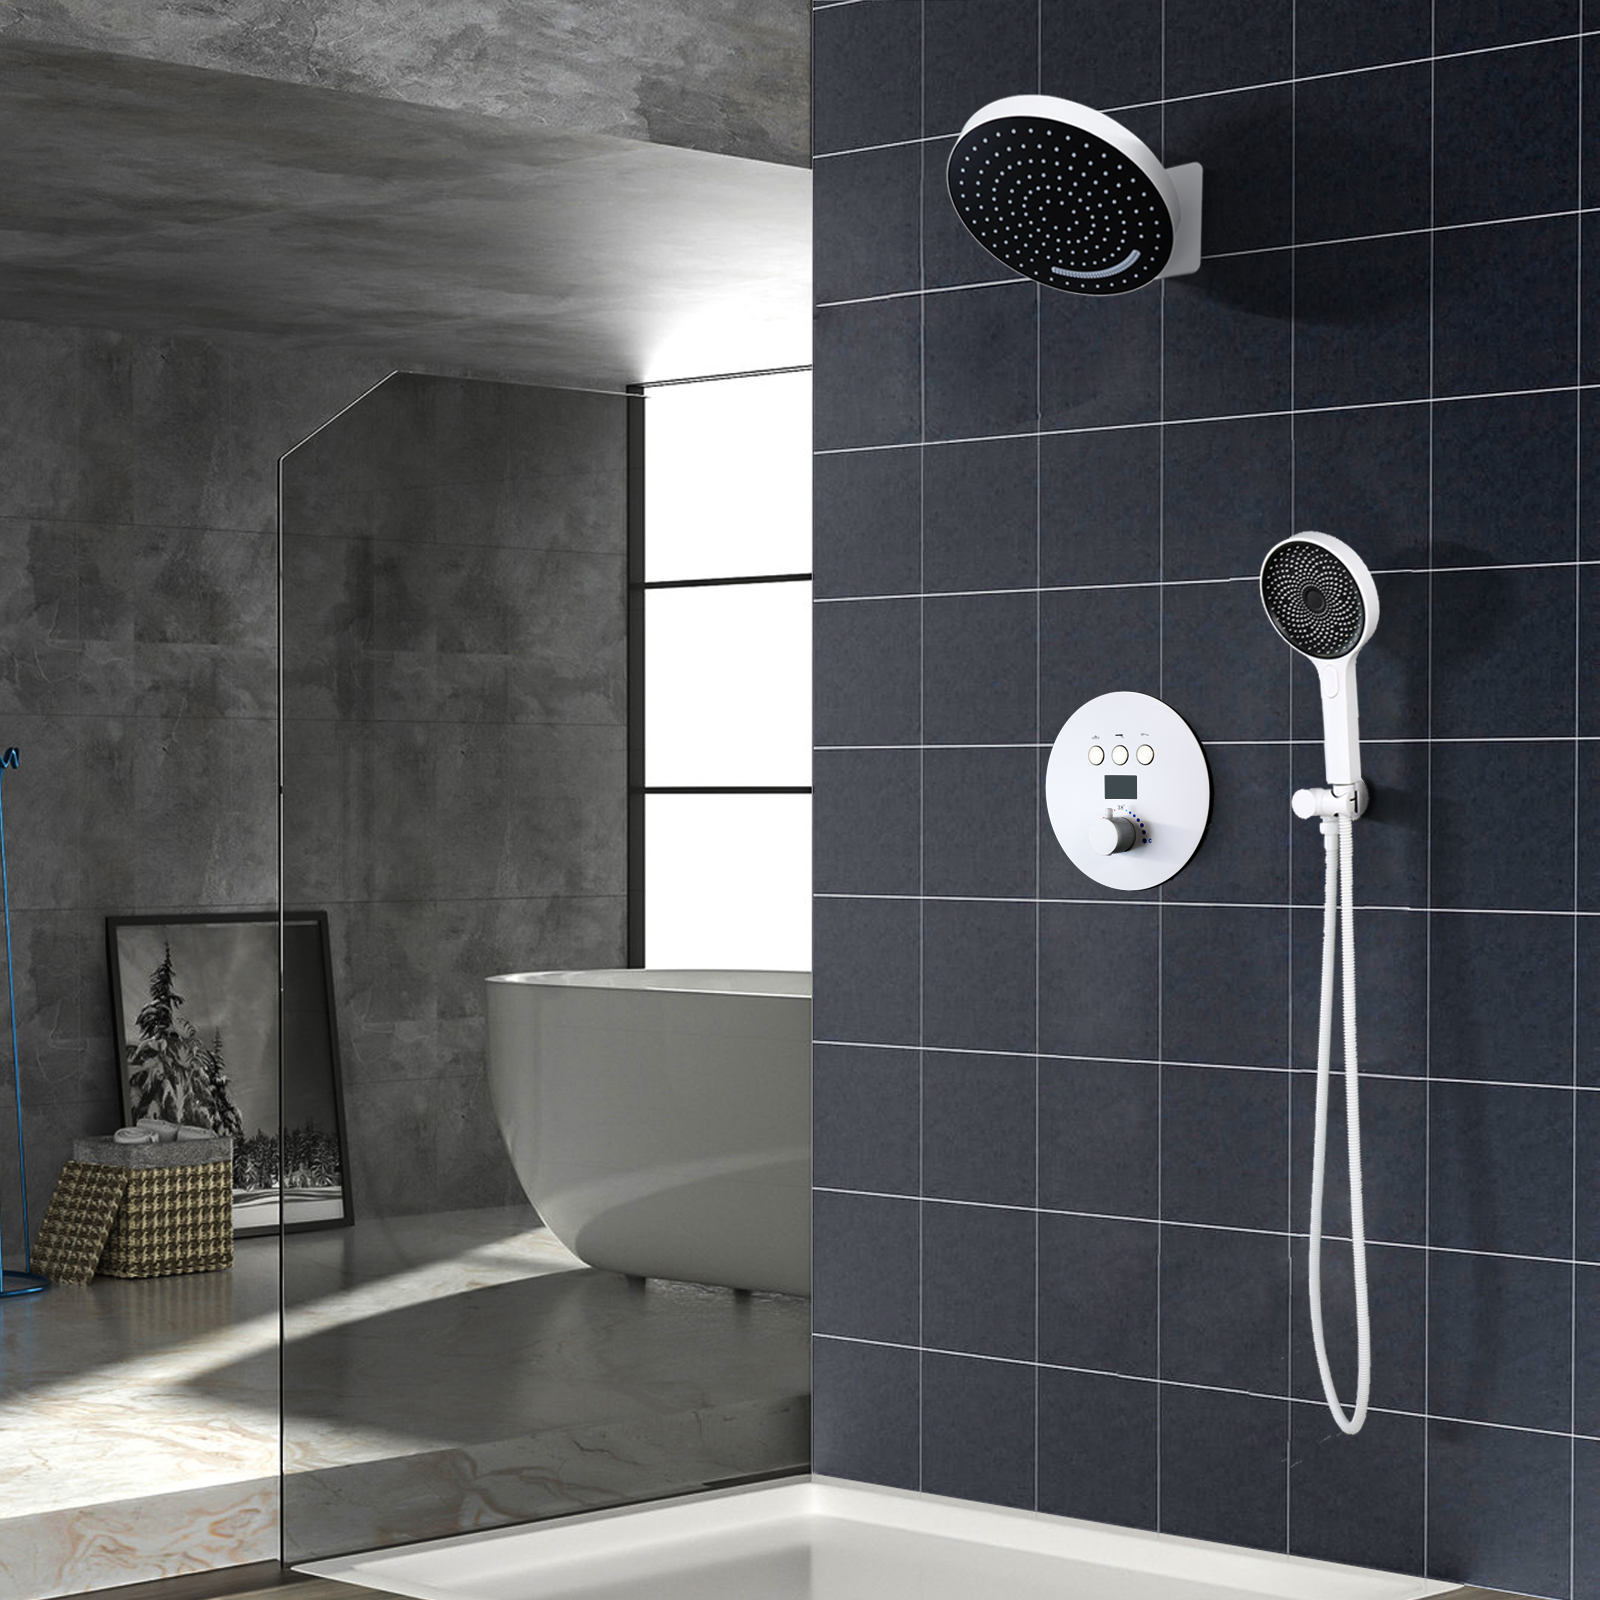 Ducha empotrada con juego de ducha empotrado montado en la pared, ducha de techo oculta en el baño doméstico